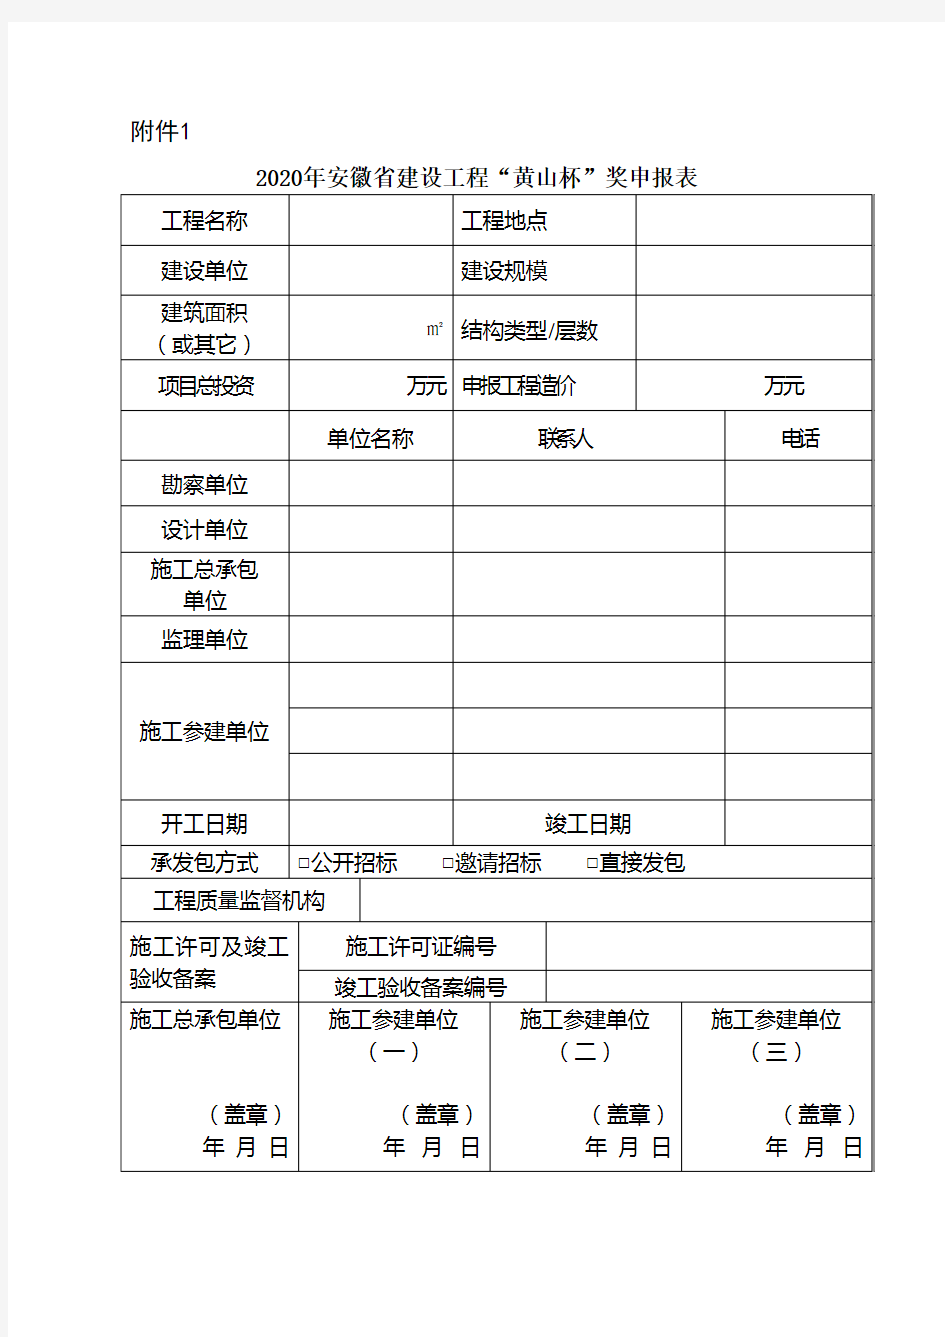 2020年度安徽省建设工程“黄山杯”奖申报表及申报资料要求